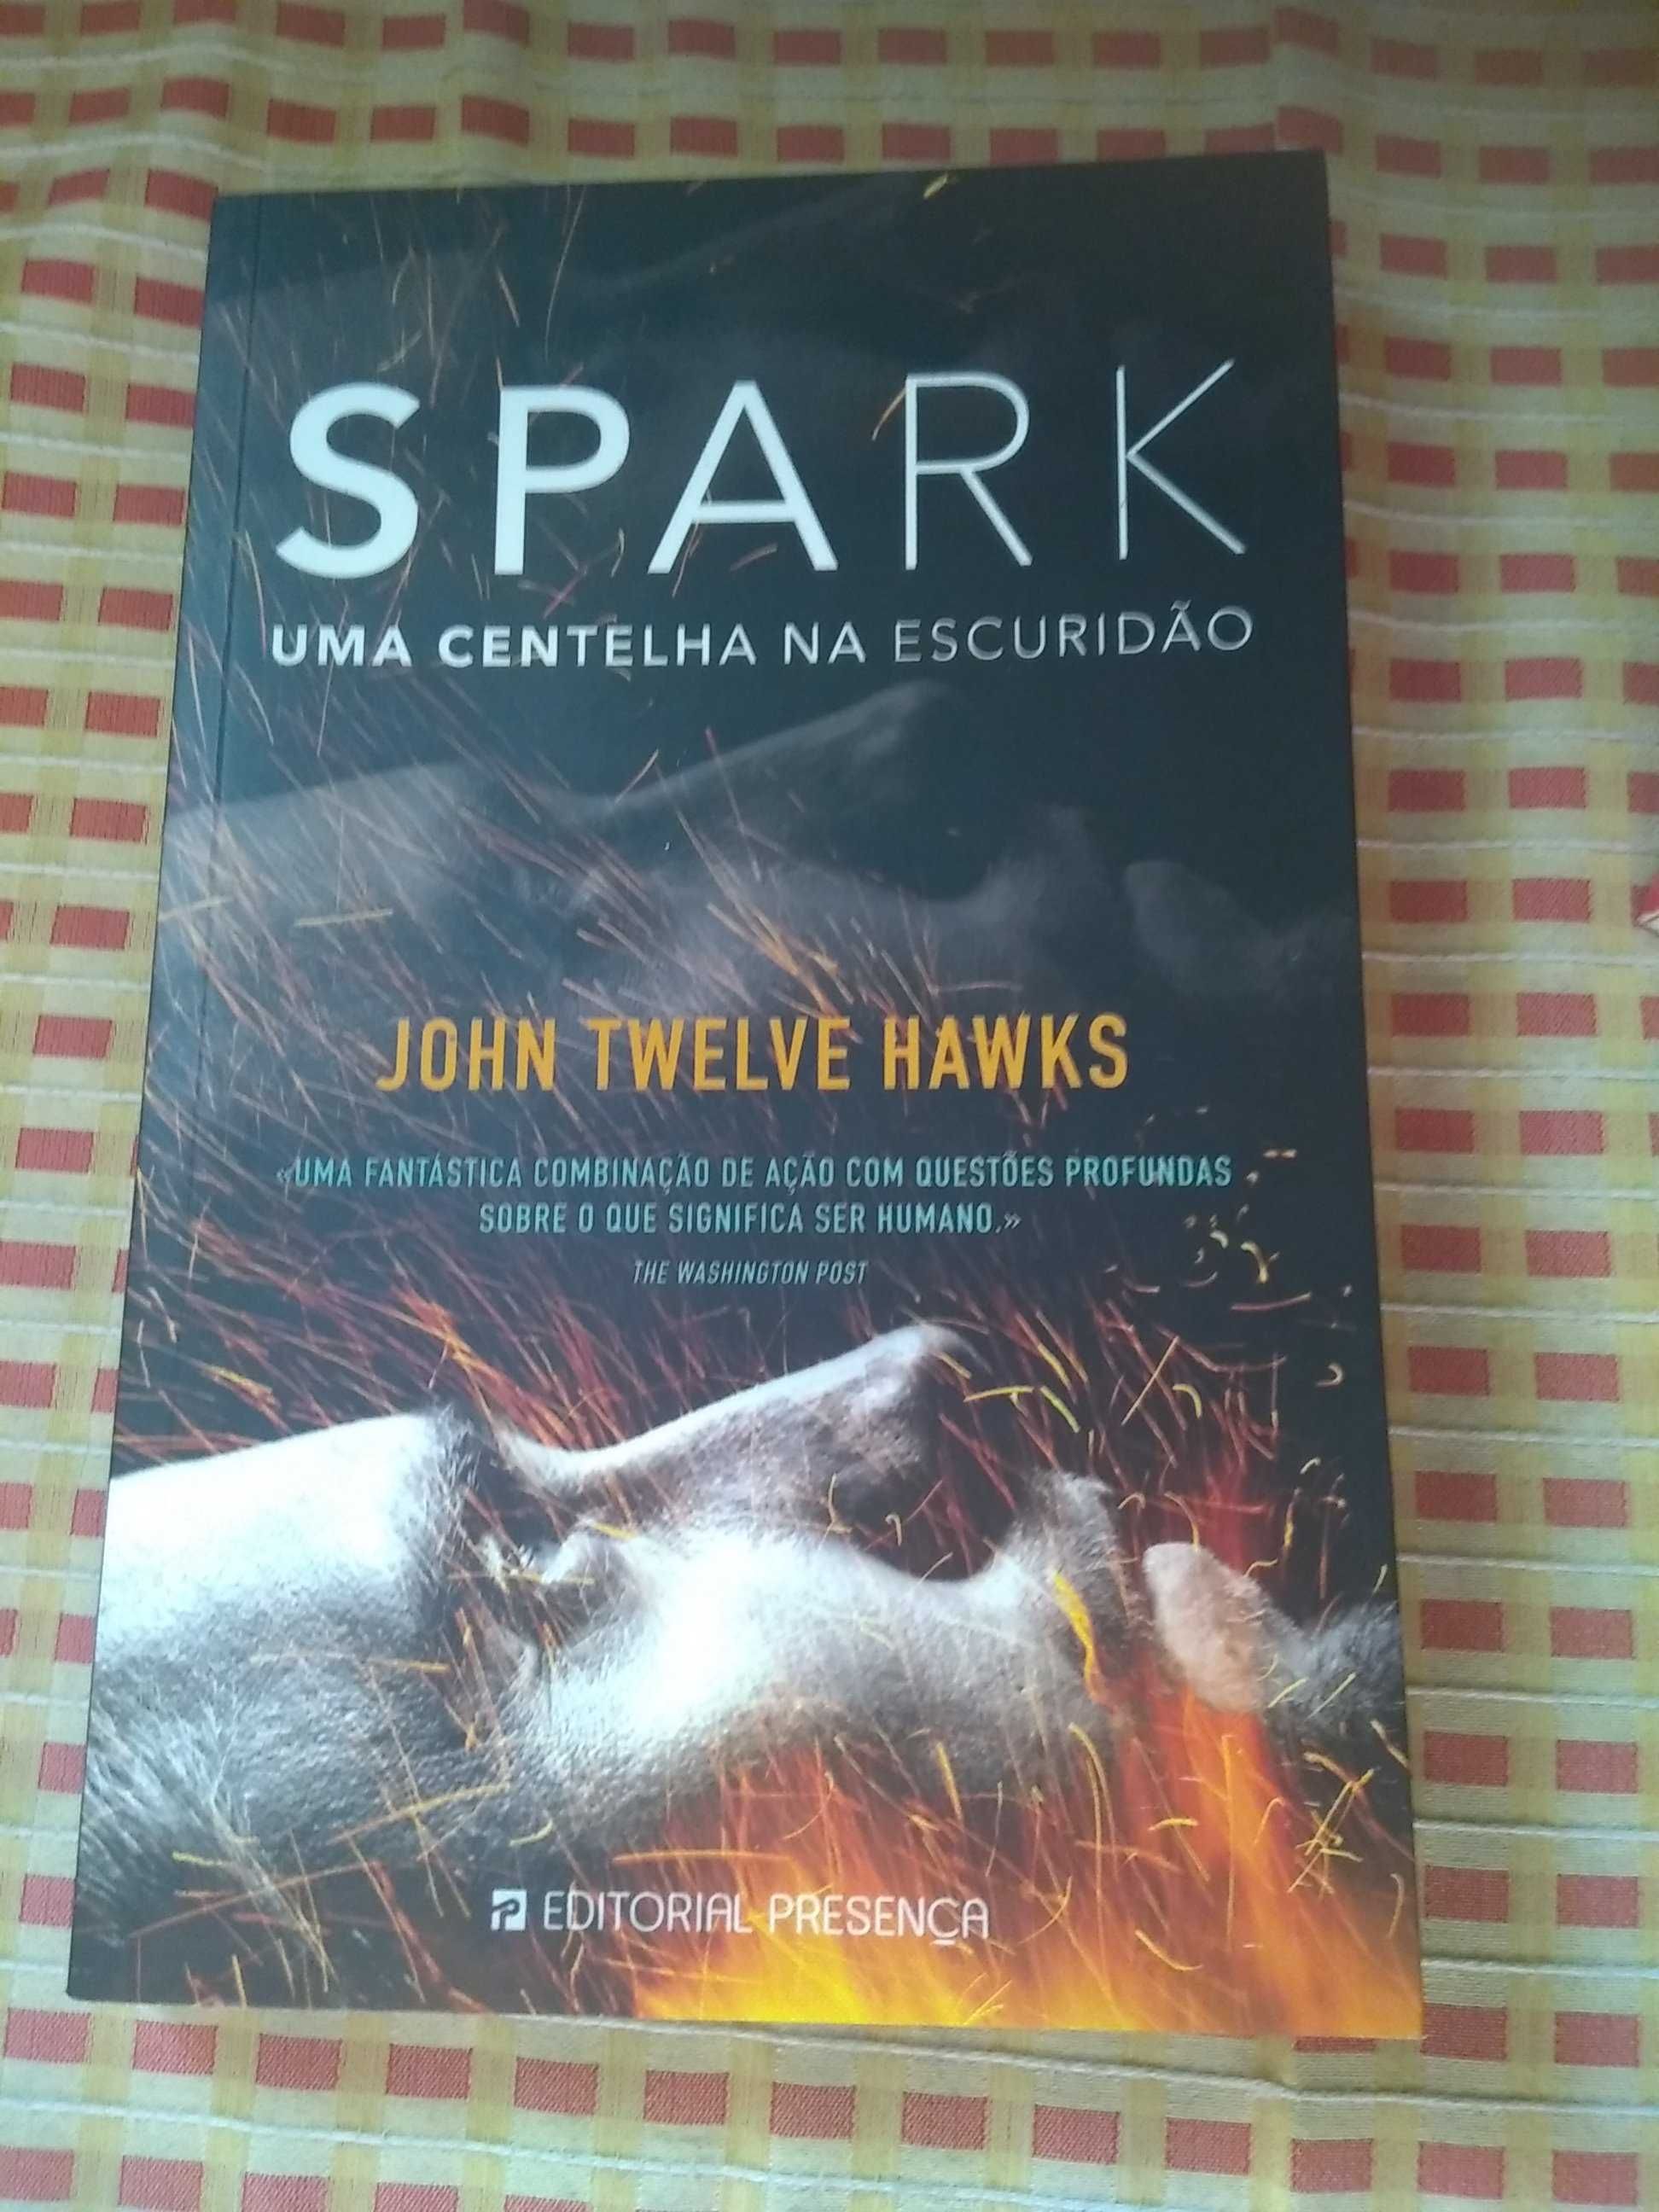 John Twelve Hawks - Sapark uma centelha na escuridão